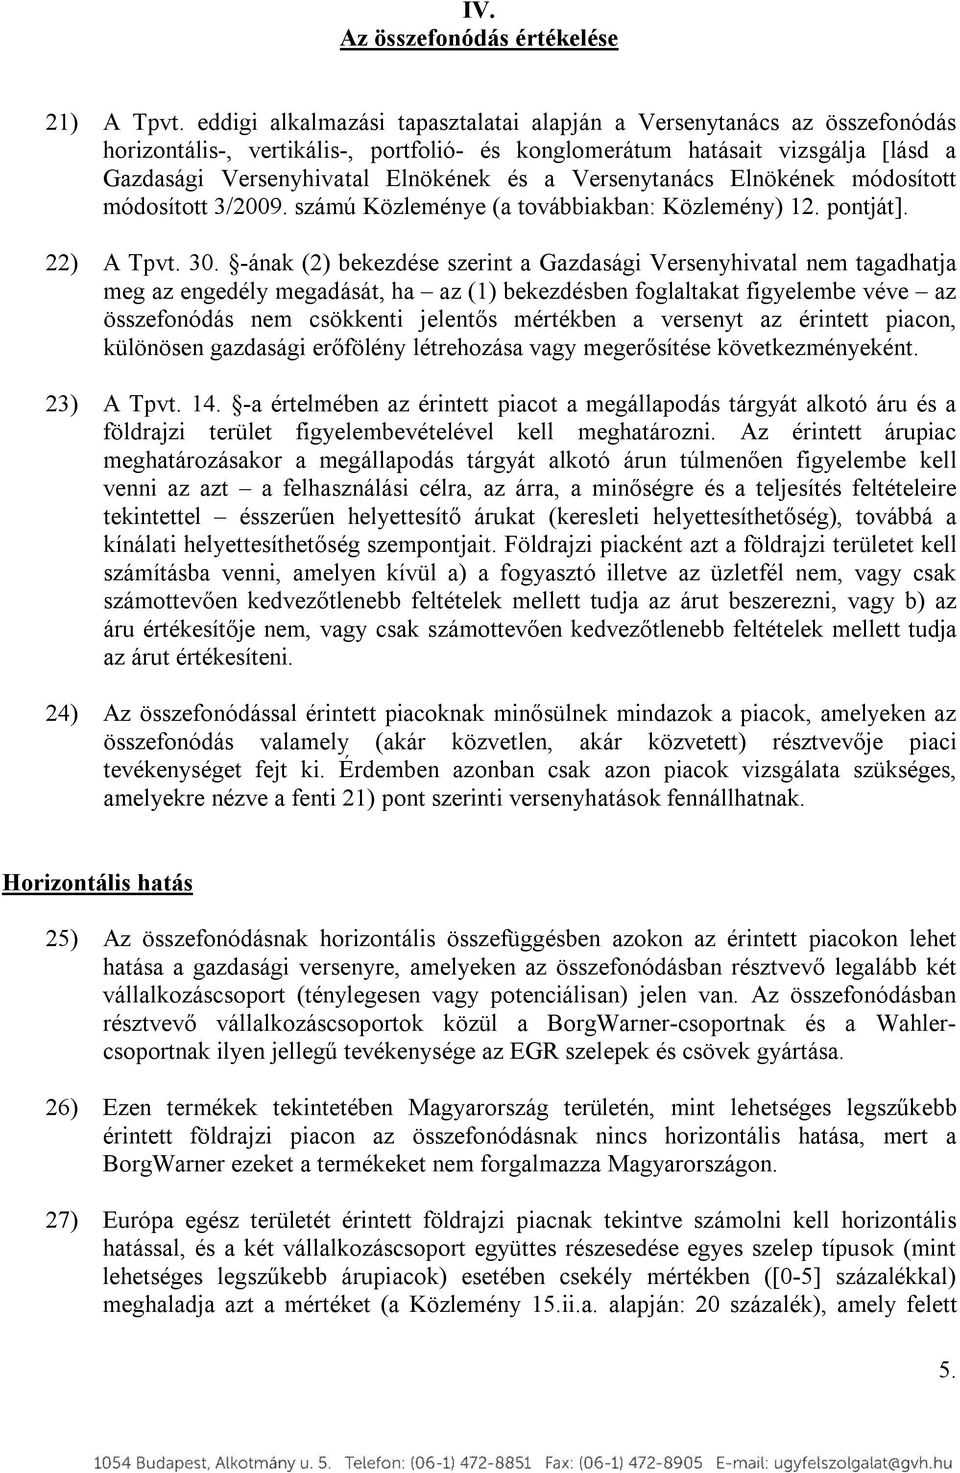 Versenytanács Elnökének módosított módosított 3/2009. számú Közleménye (a továbbiakban: Közlemény) 12. pontját]. 22) A Tpvt. 30.